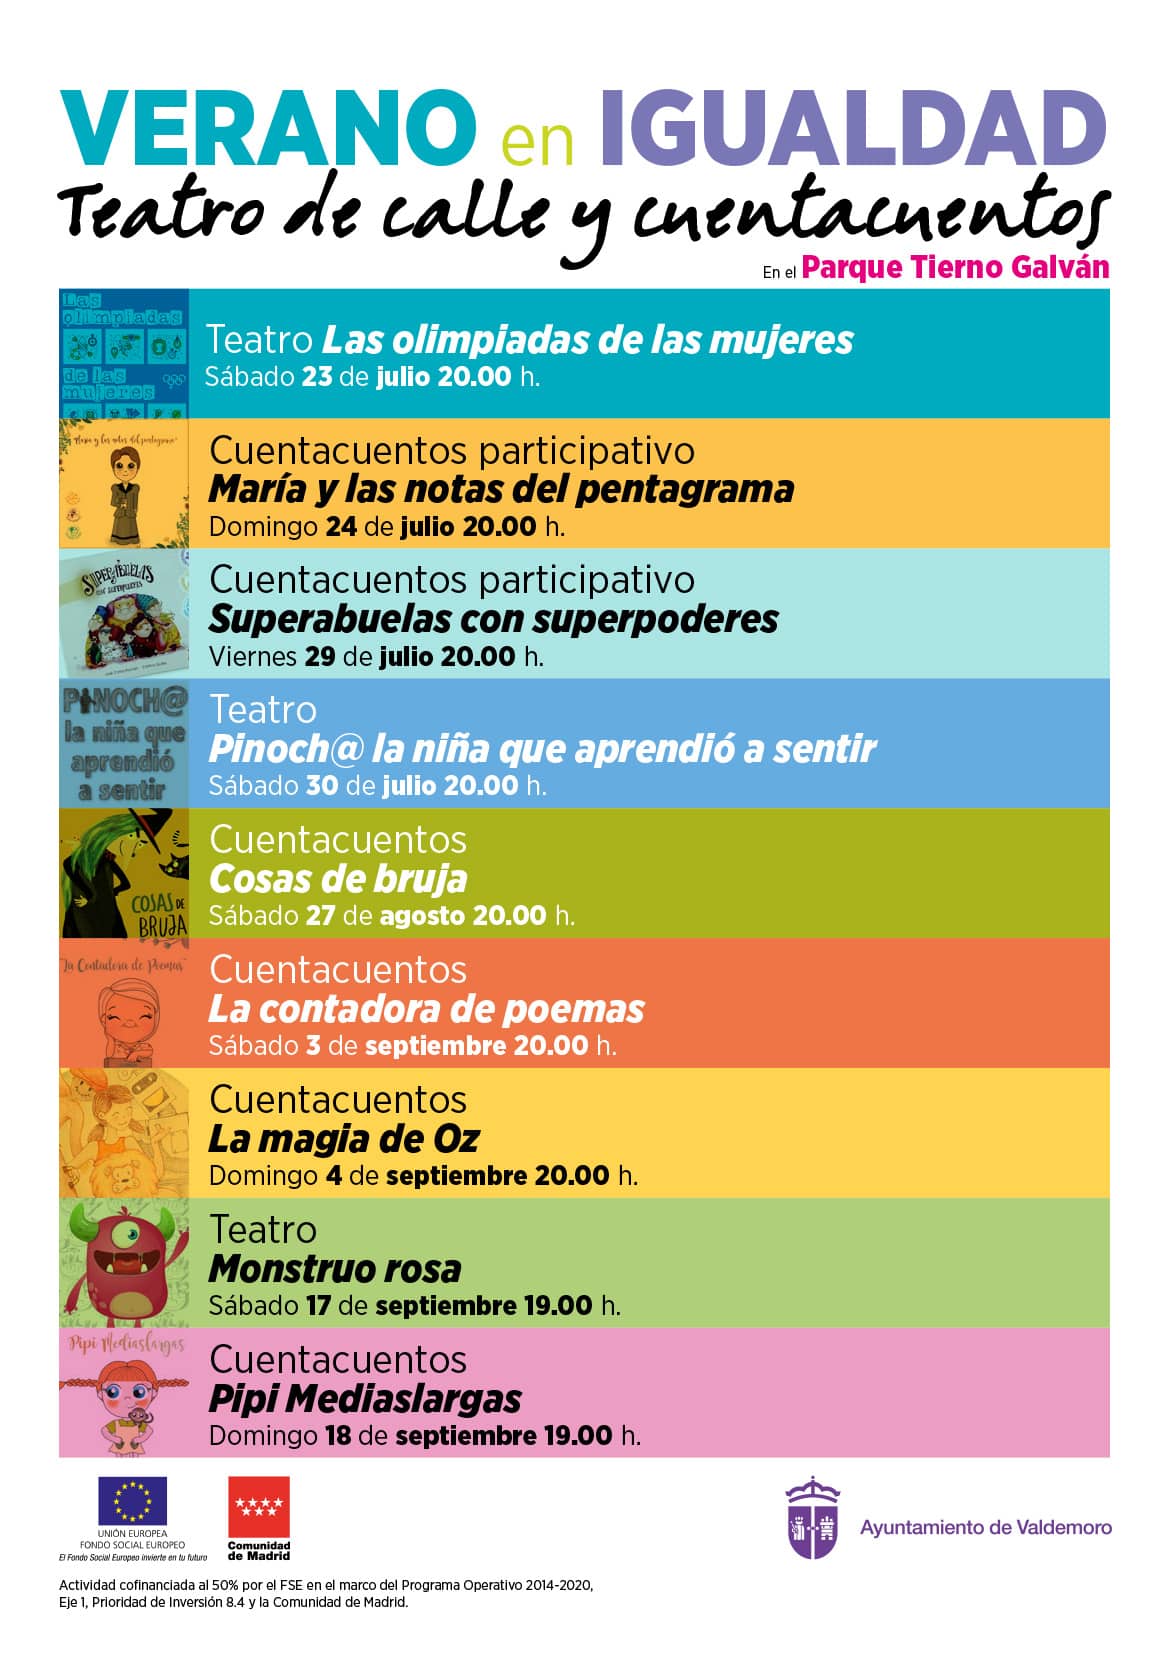 Cartel del teatro de calle y cuentacuentos 'Verano en Igualdad' de Valdemoro